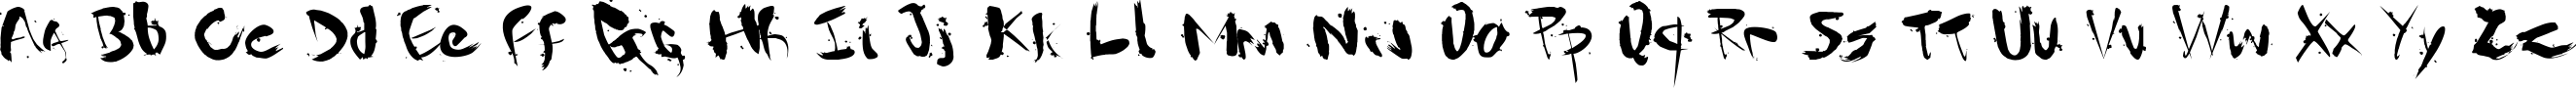 Пример написания английского алфавита шрифтом Gantz font